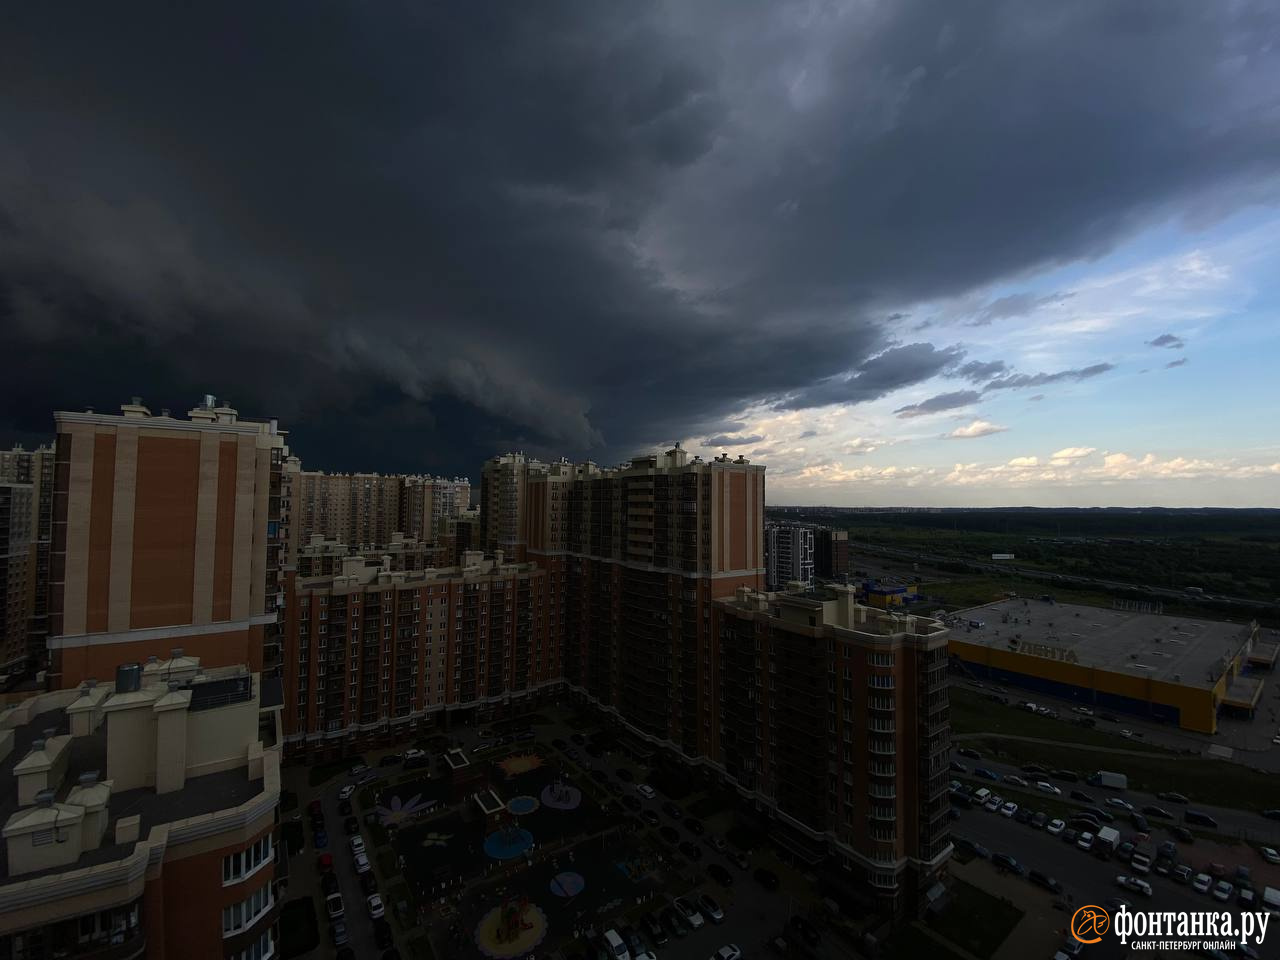 «Буря, скоро грянет буря». Петербуржцы делятся фотографиями надвигающейся непогоды и летнего ливня